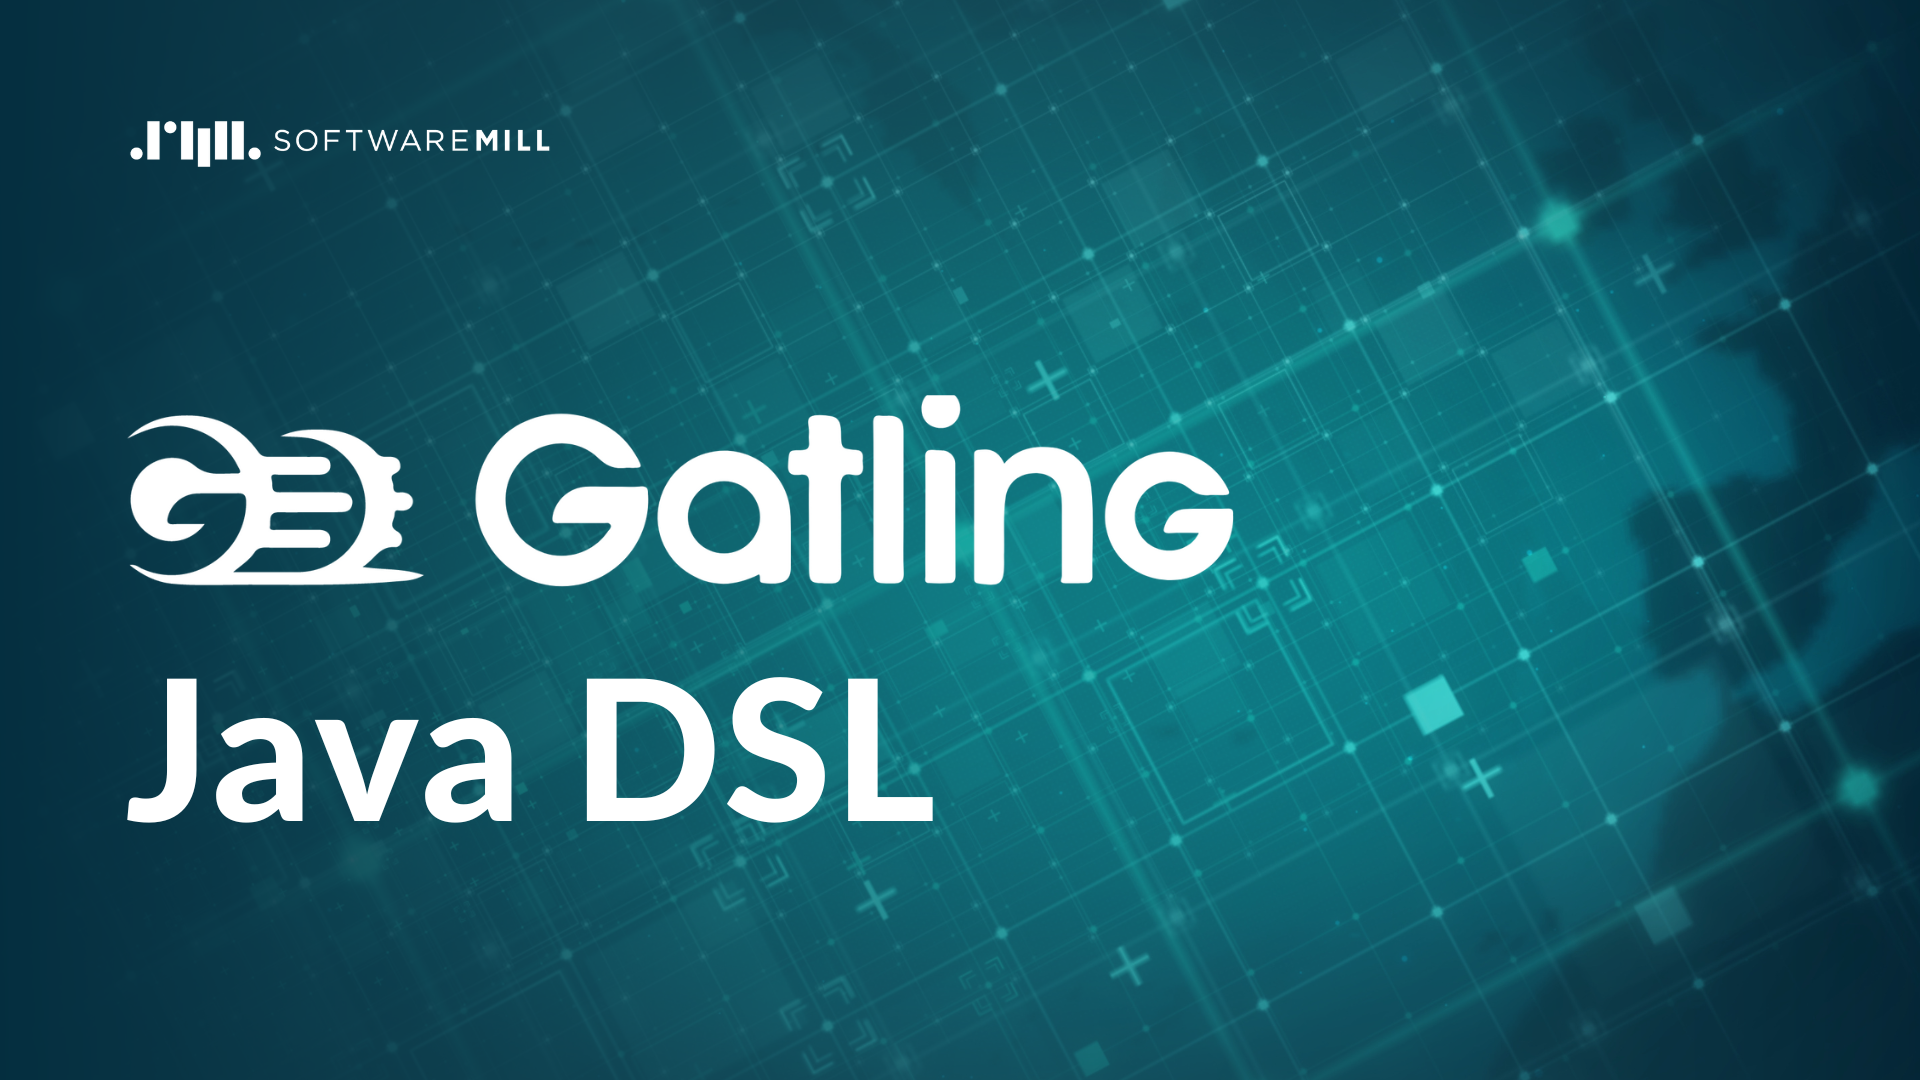 Gatling Java DSL webp image